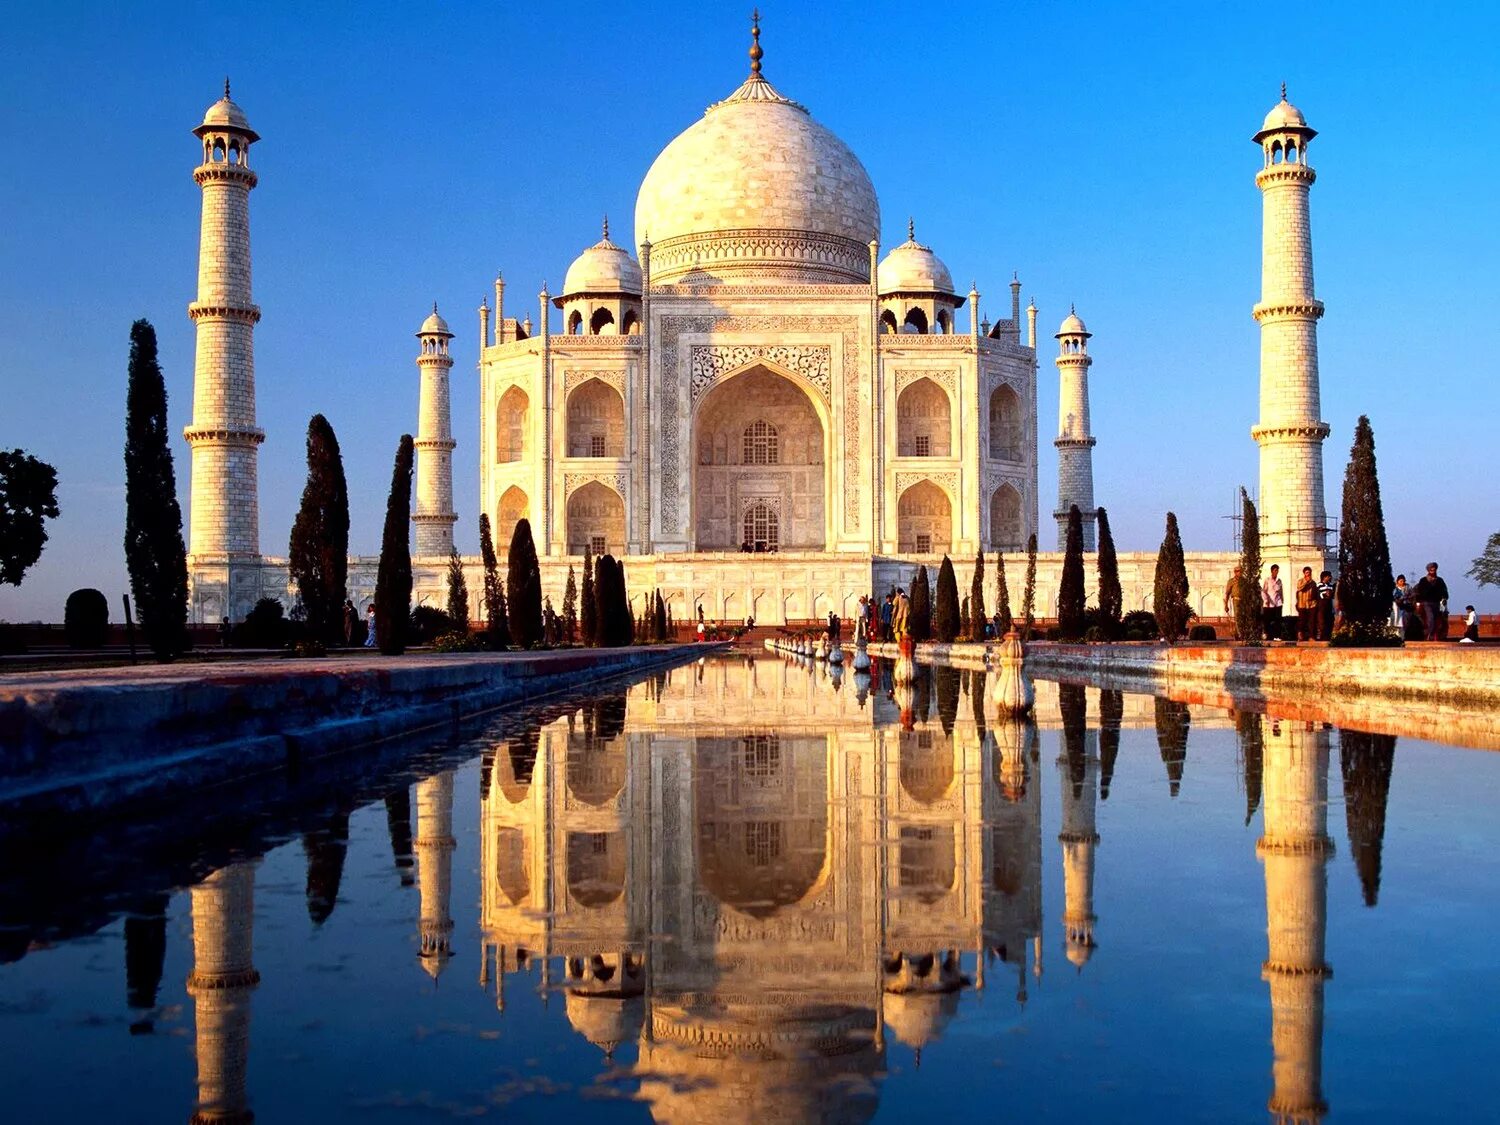 Достопримечательности среднего города. Мавзолей Тадж-Махал в Индии. Мечеть в Индии Тадж Махал. Тадж-Махал, Агра, Индия (Азия). Архитектура Индии Тадж Махал.